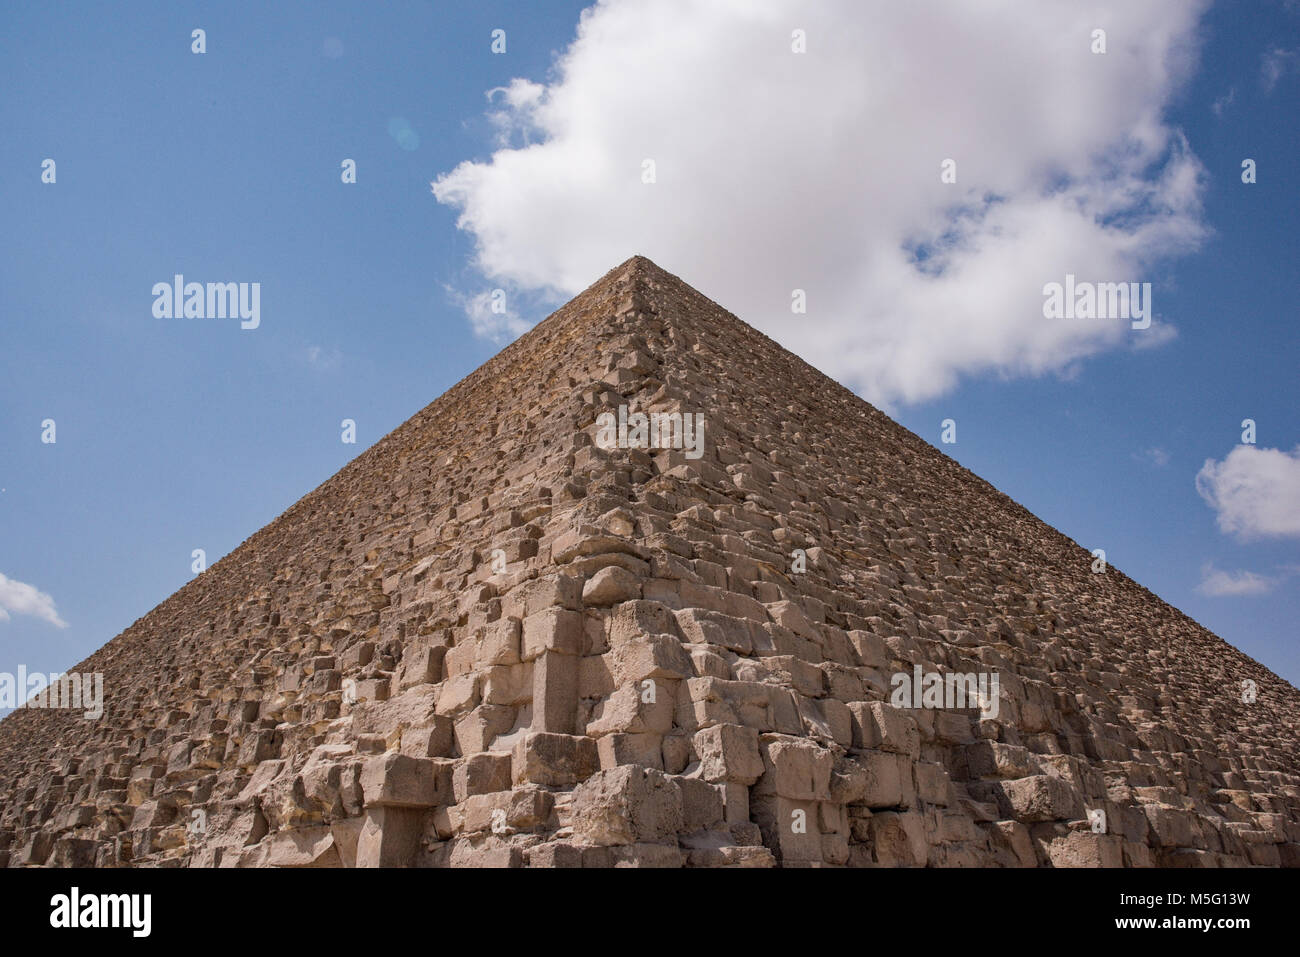 Grande pyramide de Khéops vue des bases de données. Plateau de Gizeh, Le Caire, Égypte. Banque D'Images